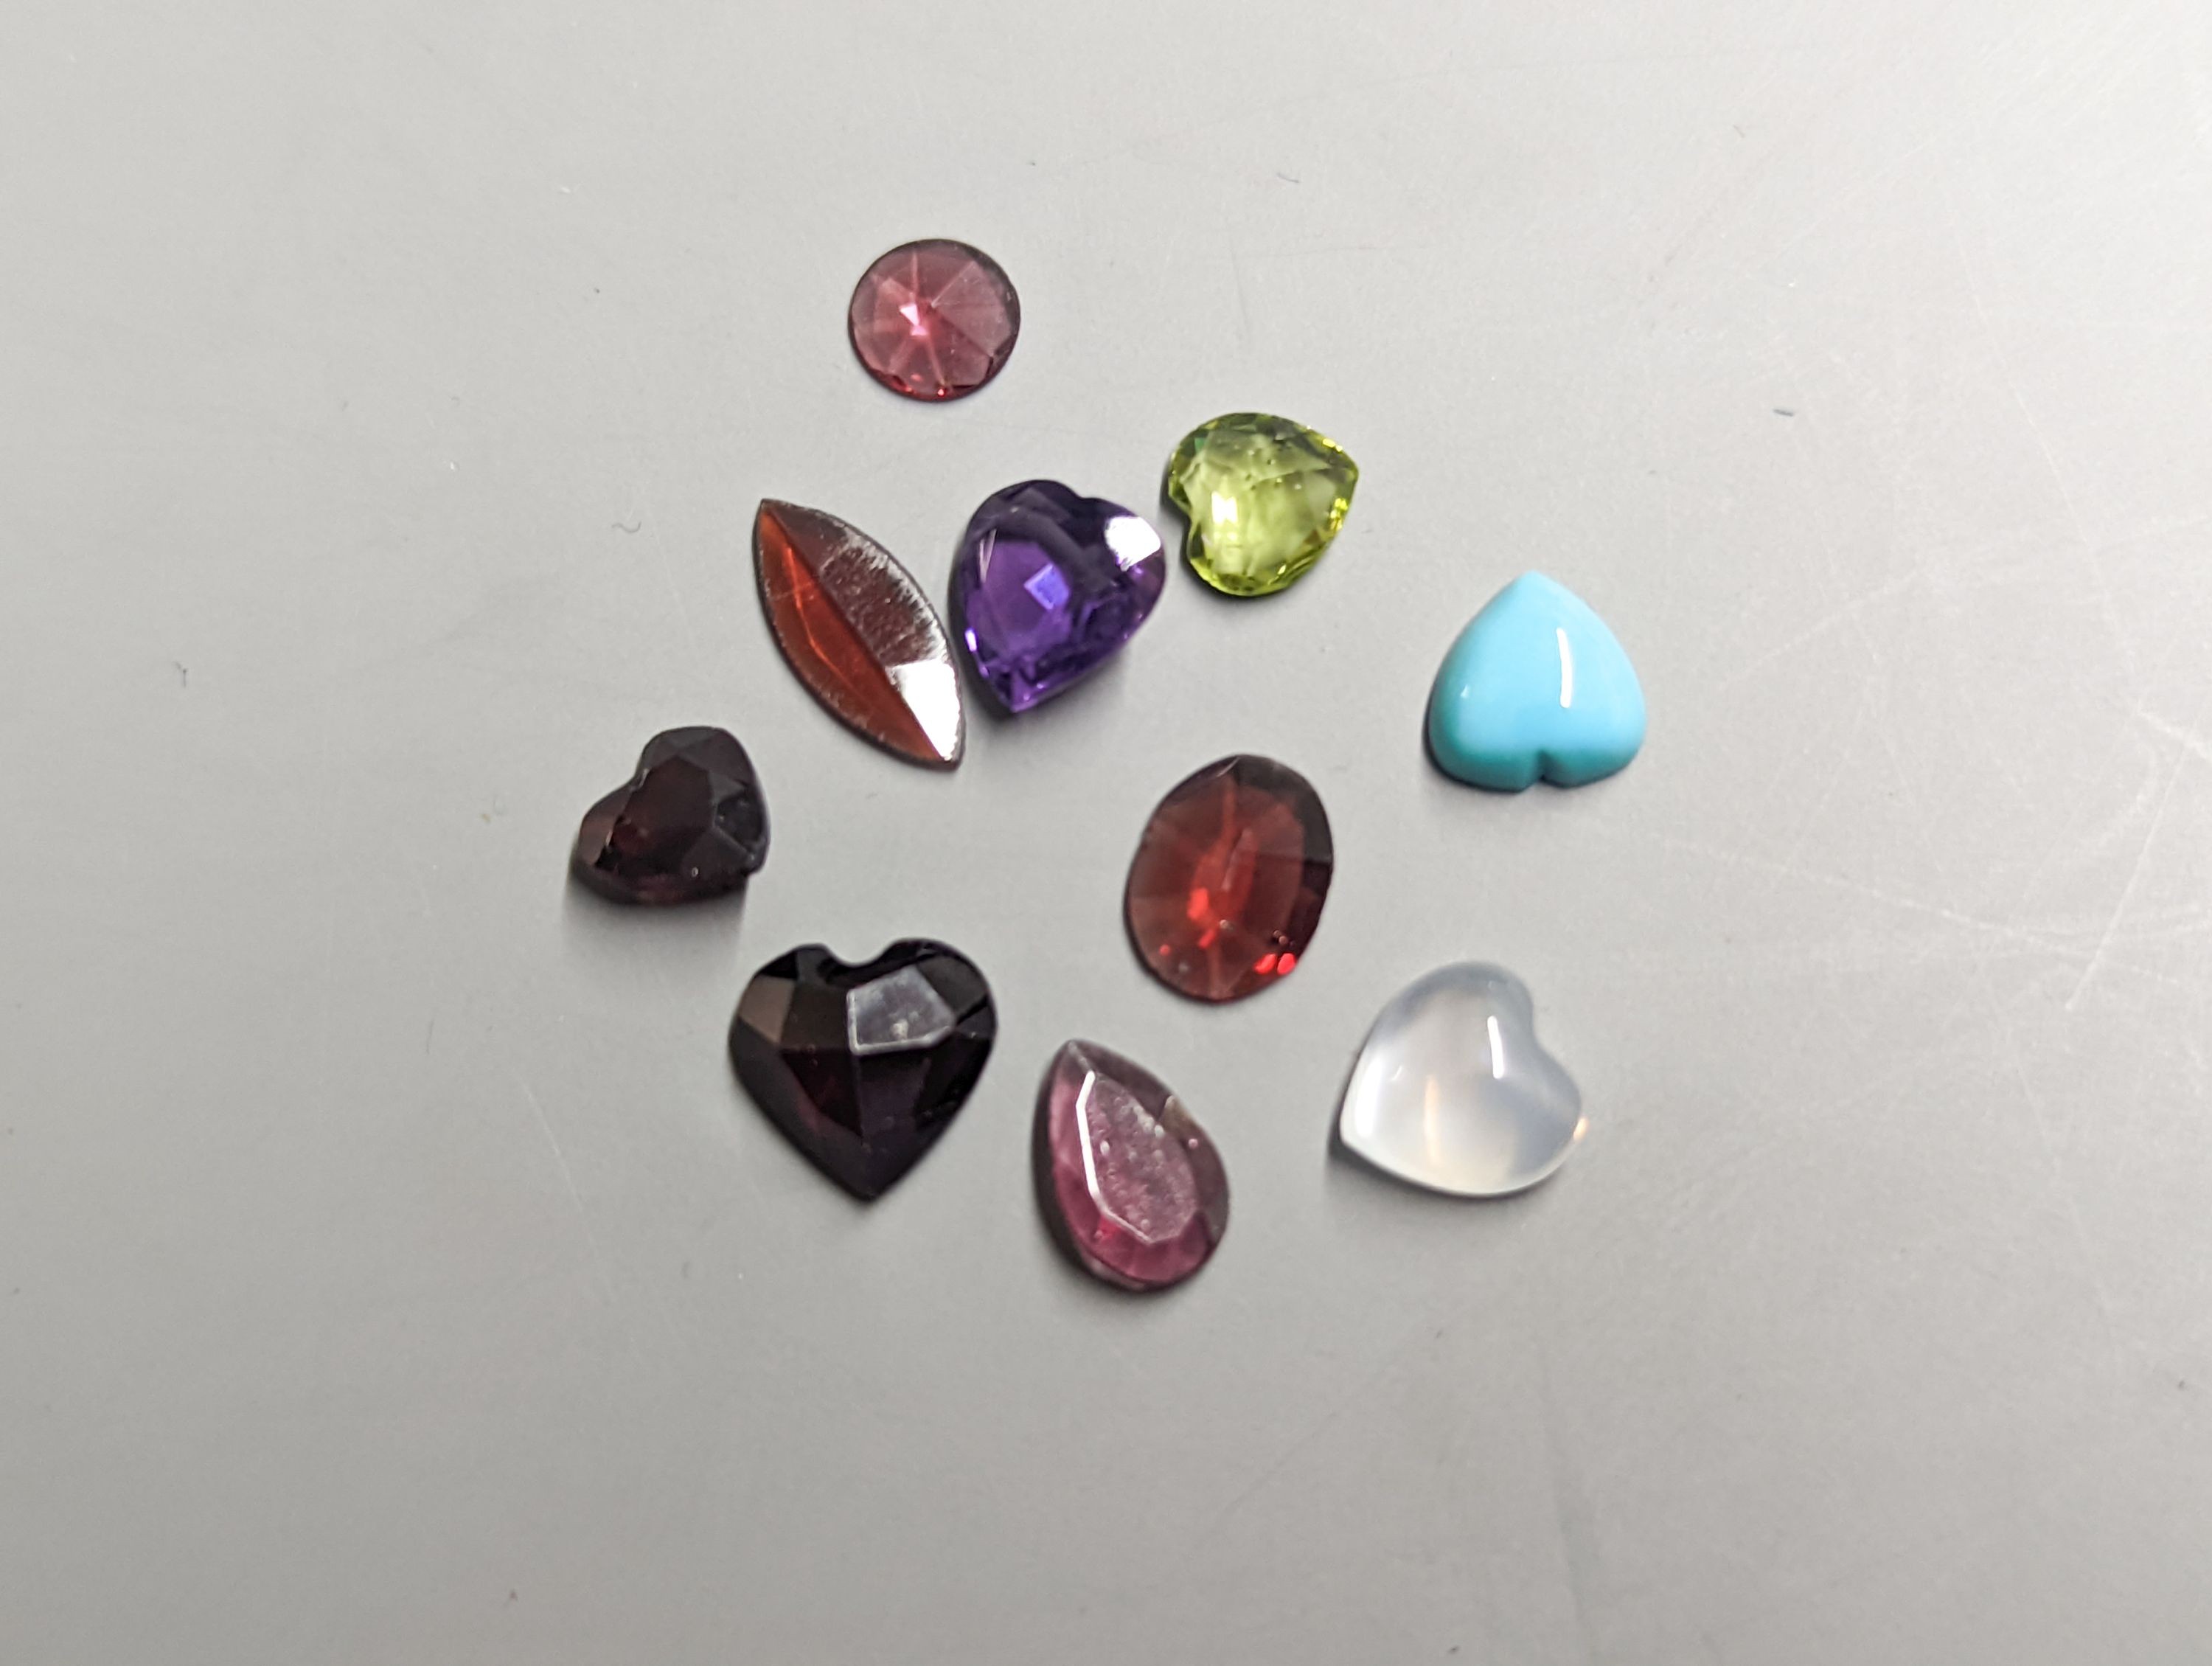 Nine assorted unmounted cut semi-precious gemstones including amethyst and garnet.